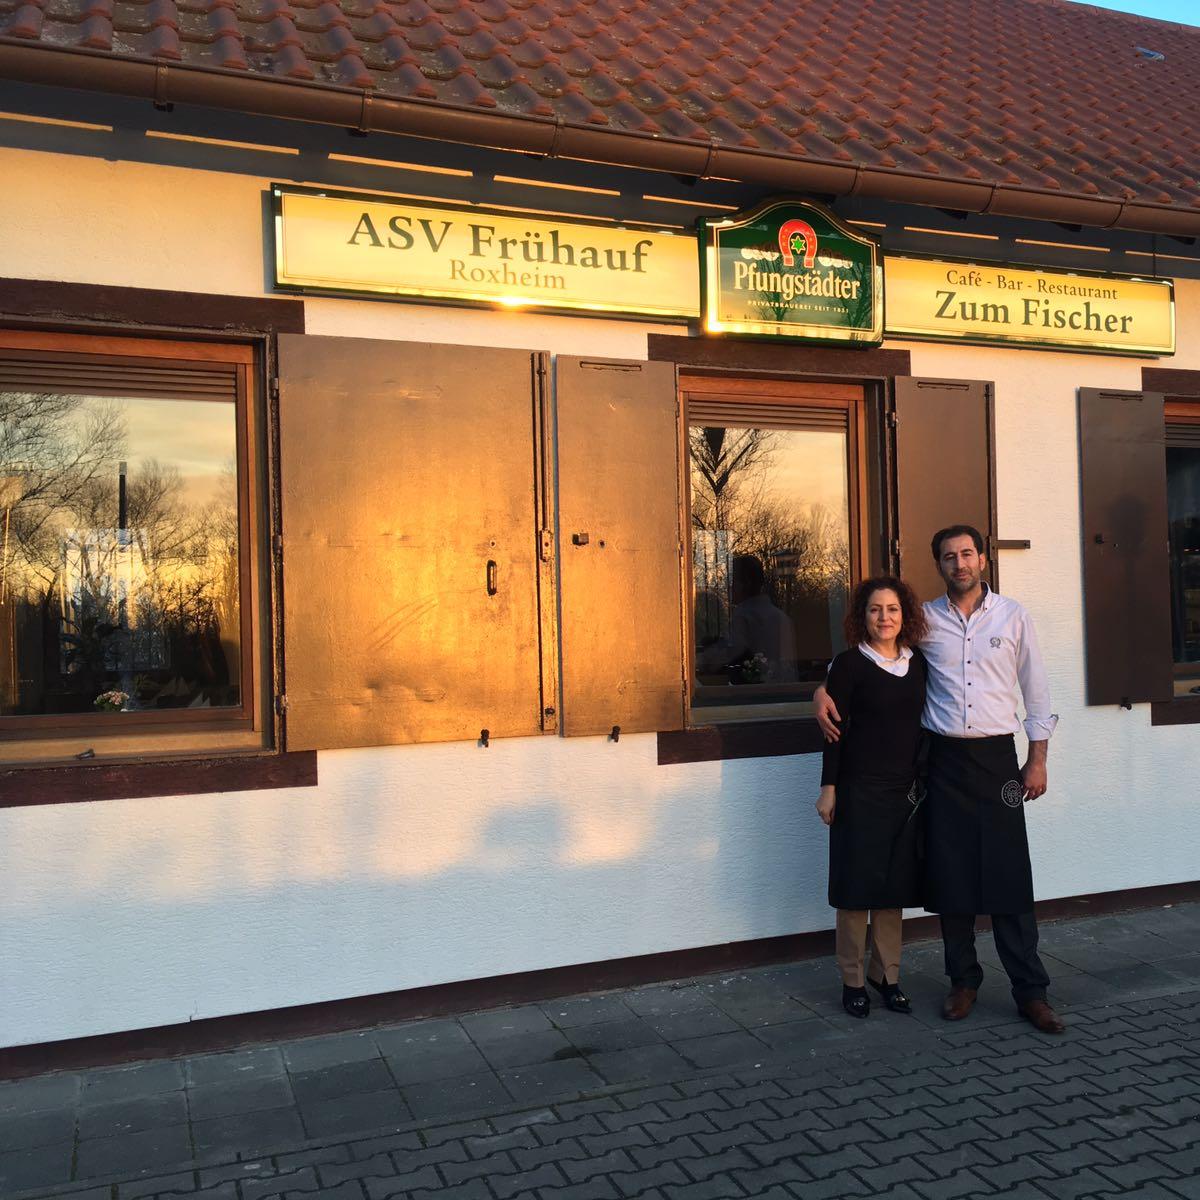 Restaurant "Zum Fischer, ASV Frühauf" in  Bobenheim-Roxheim